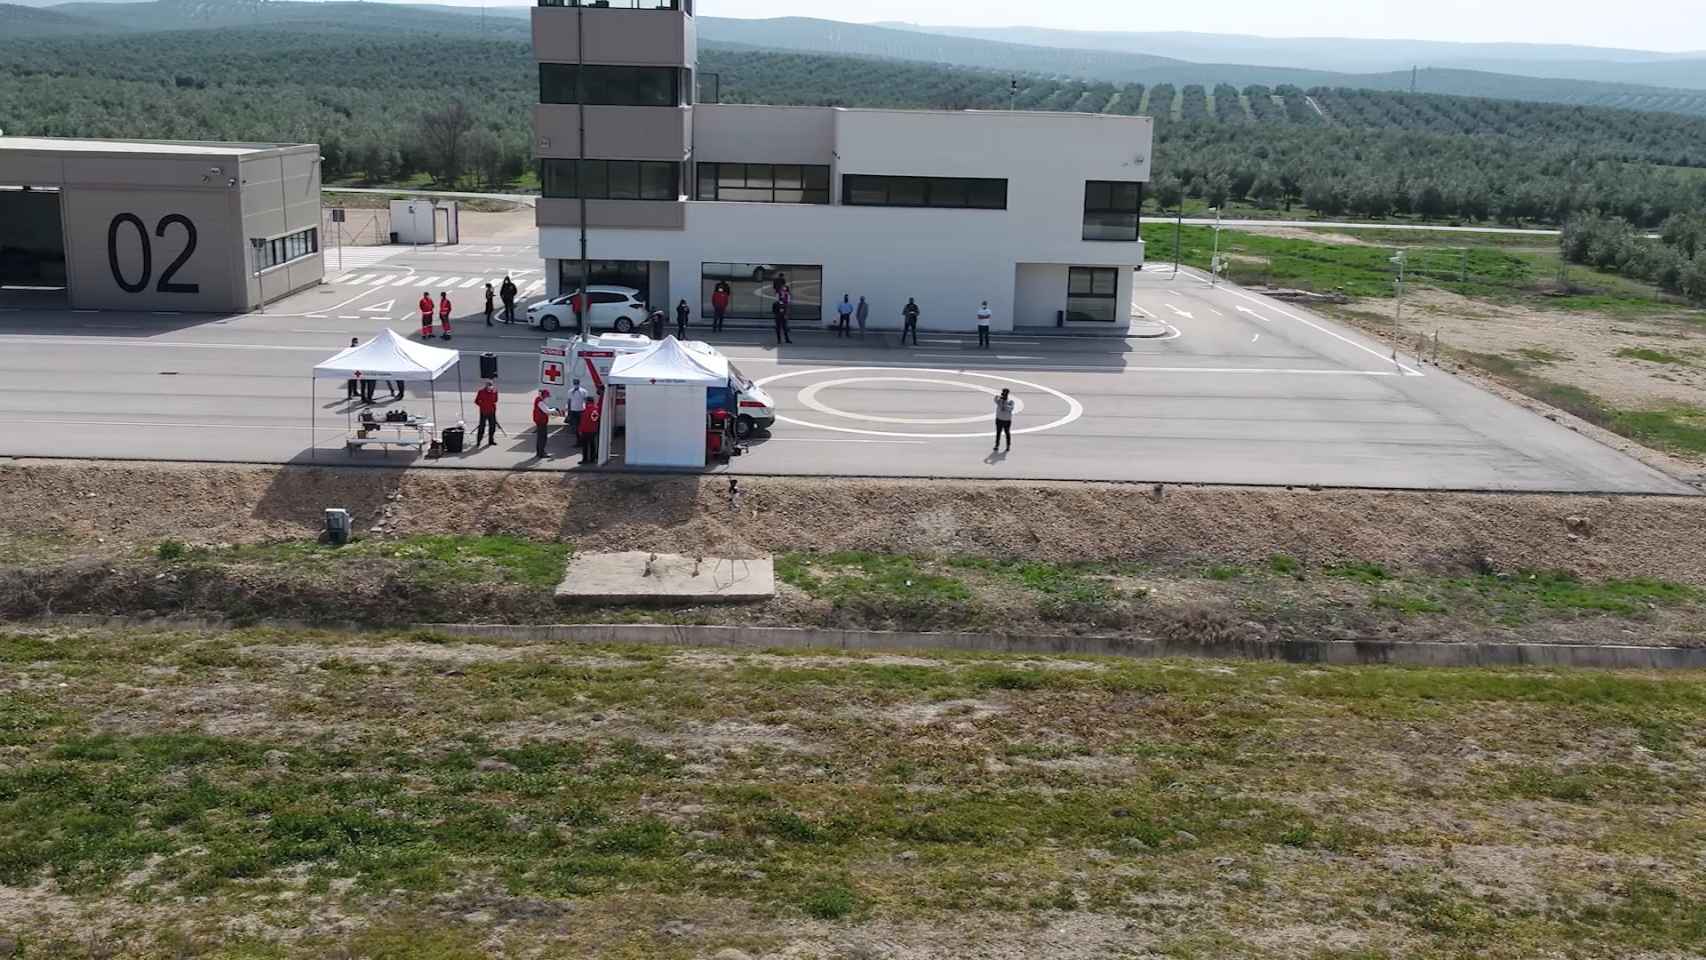 Vista desde uno de los drones empleados por la Cruz Roja en su simulacro de rescate de personas